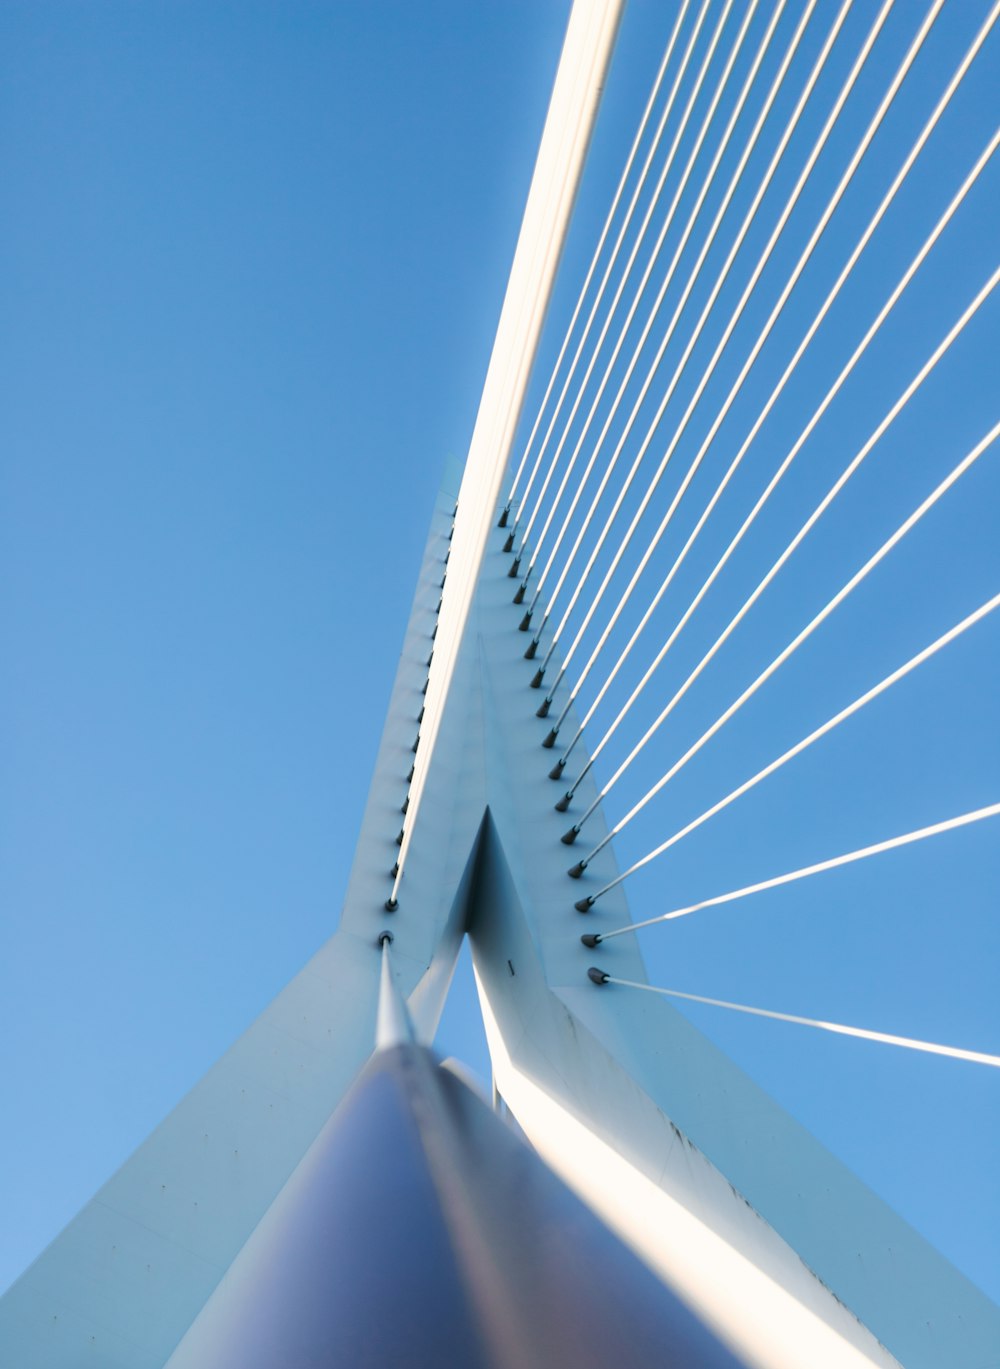 a close-up of a bridge